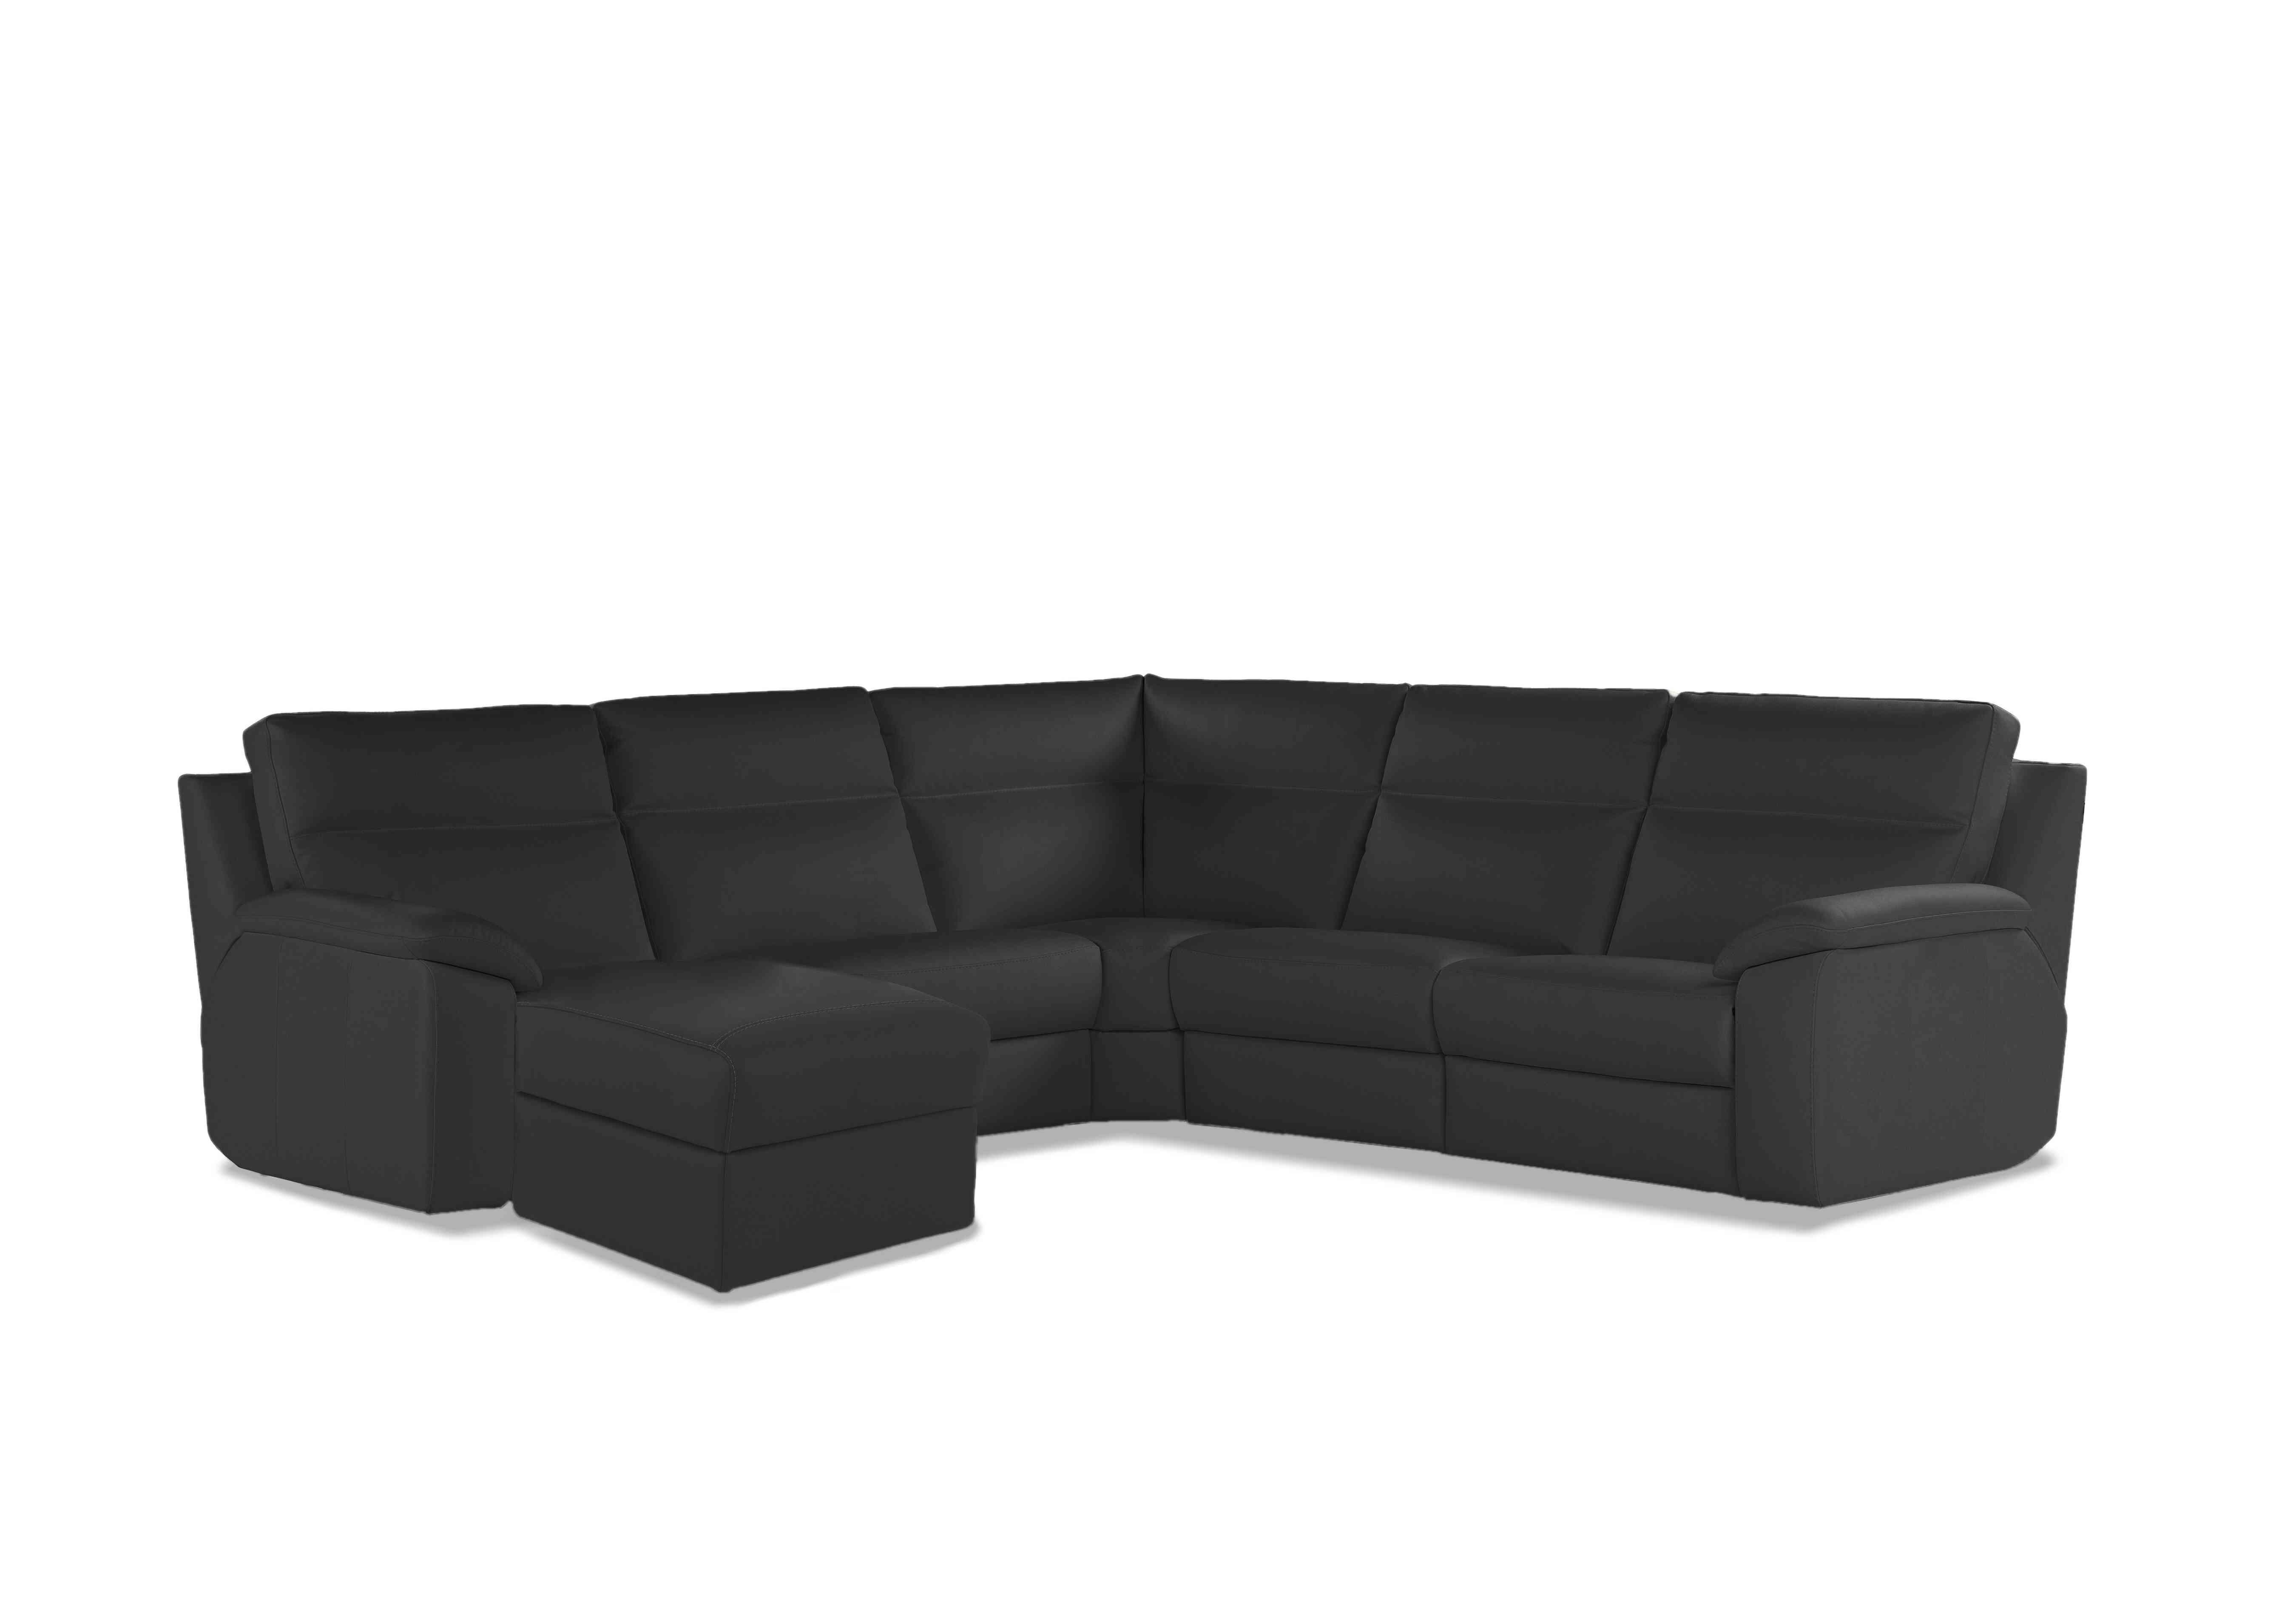 Pepino Large Leather Corner Sofa with Chaise End in 327 Torello Grigio Scuro on Furniture Village